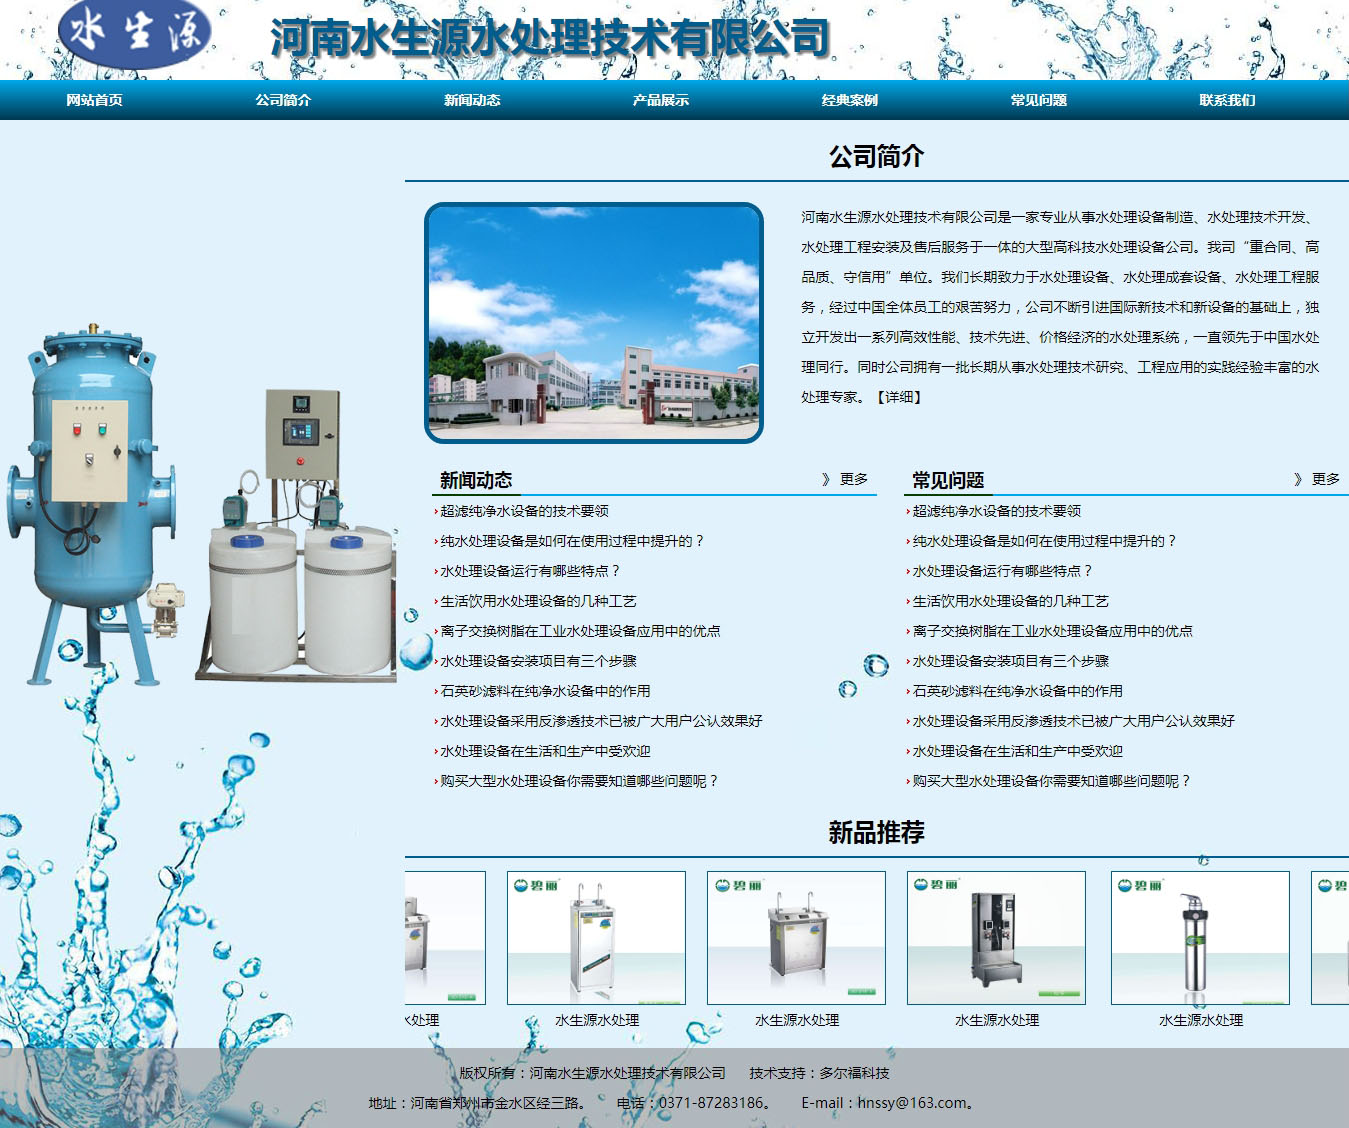 鄭州水生源處理技術有限公司